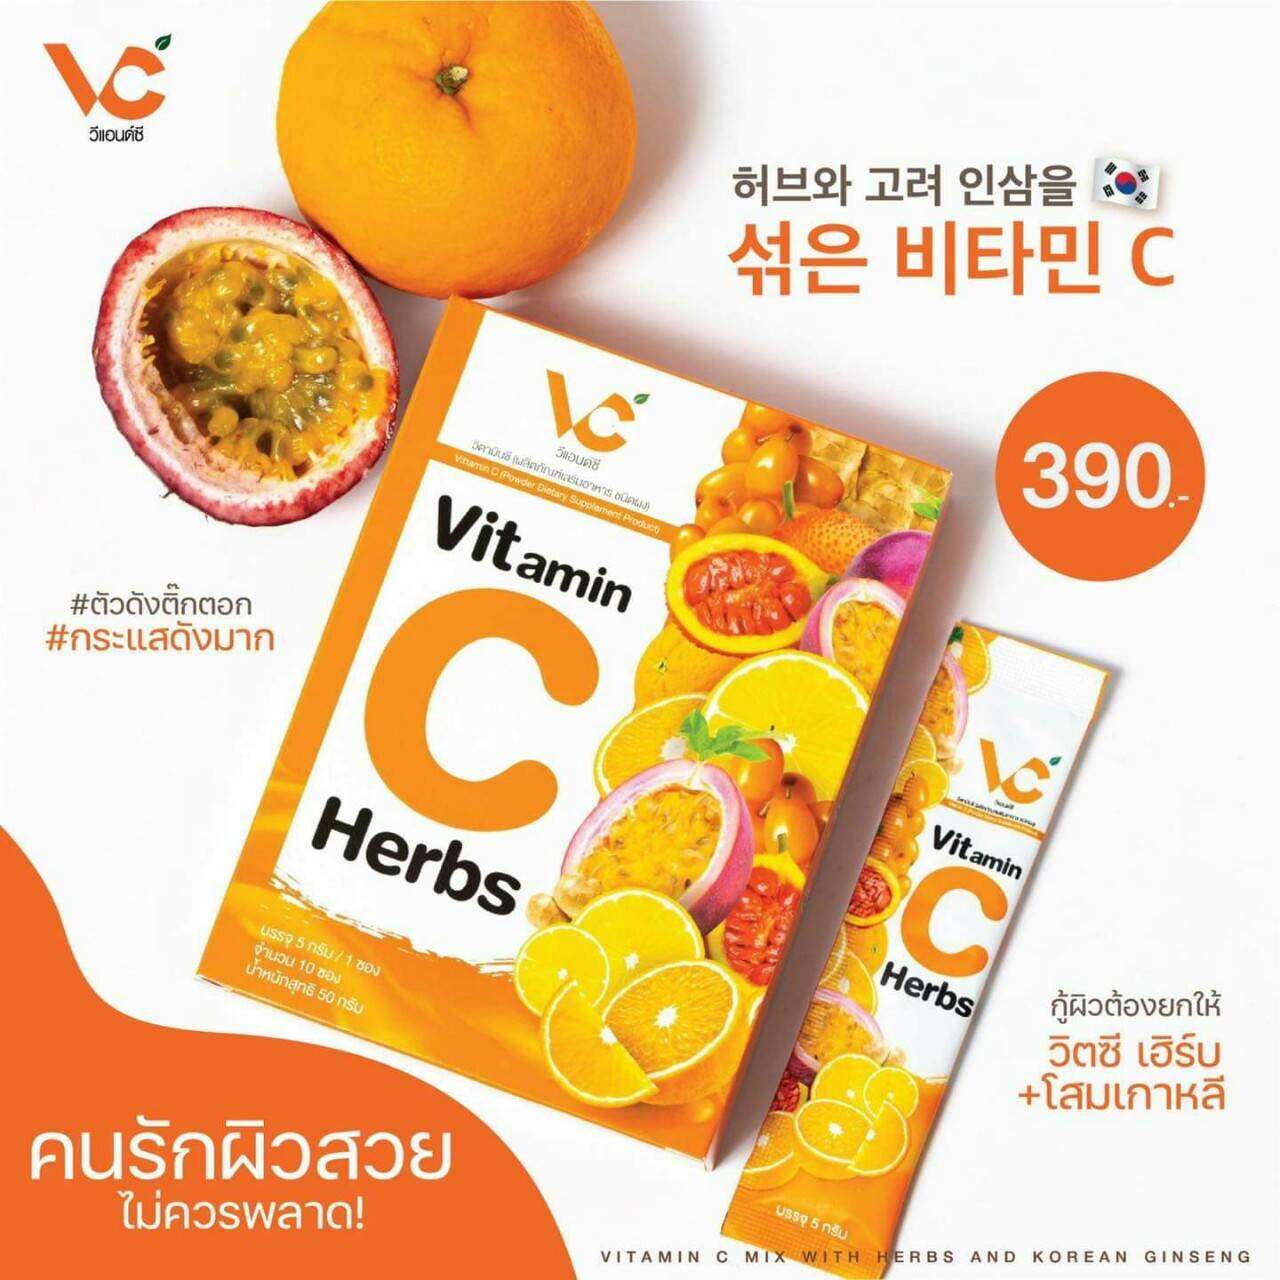 Vitamin C herbs  วิตซี เฮิร์บ + โสมเกาหลี  (1กล่อง มี10 ซอง )